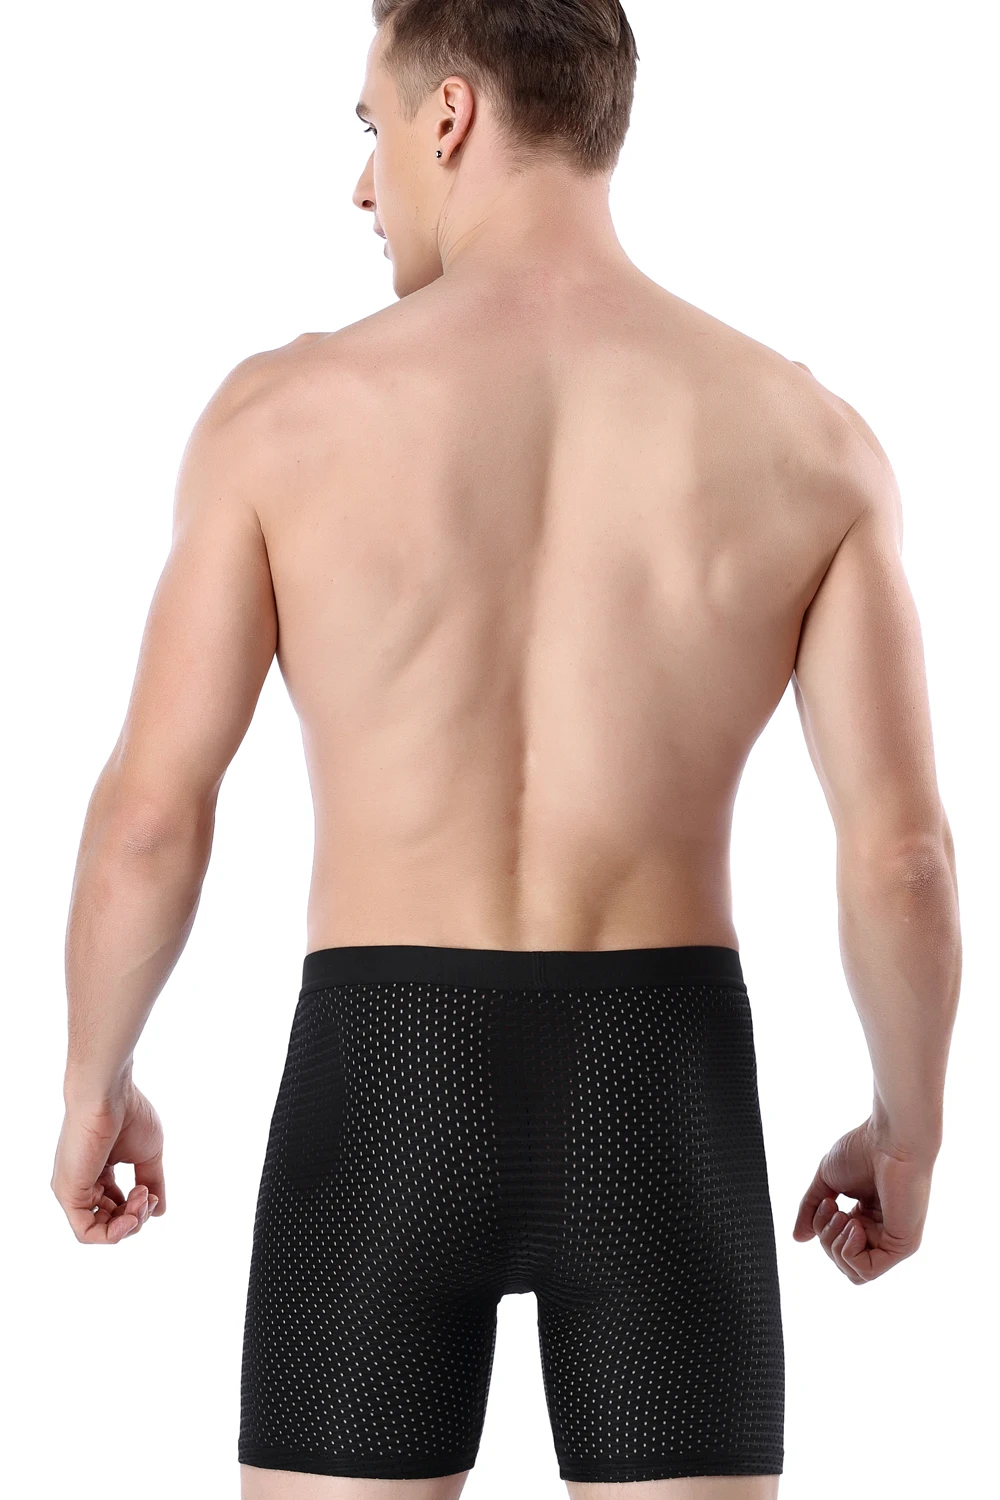 Ледяной шелк фитнес длинное нижнее белье удобные мужские трусы сетка сексуальные тянущиеся боксеры спортивная одежда мужские трусики